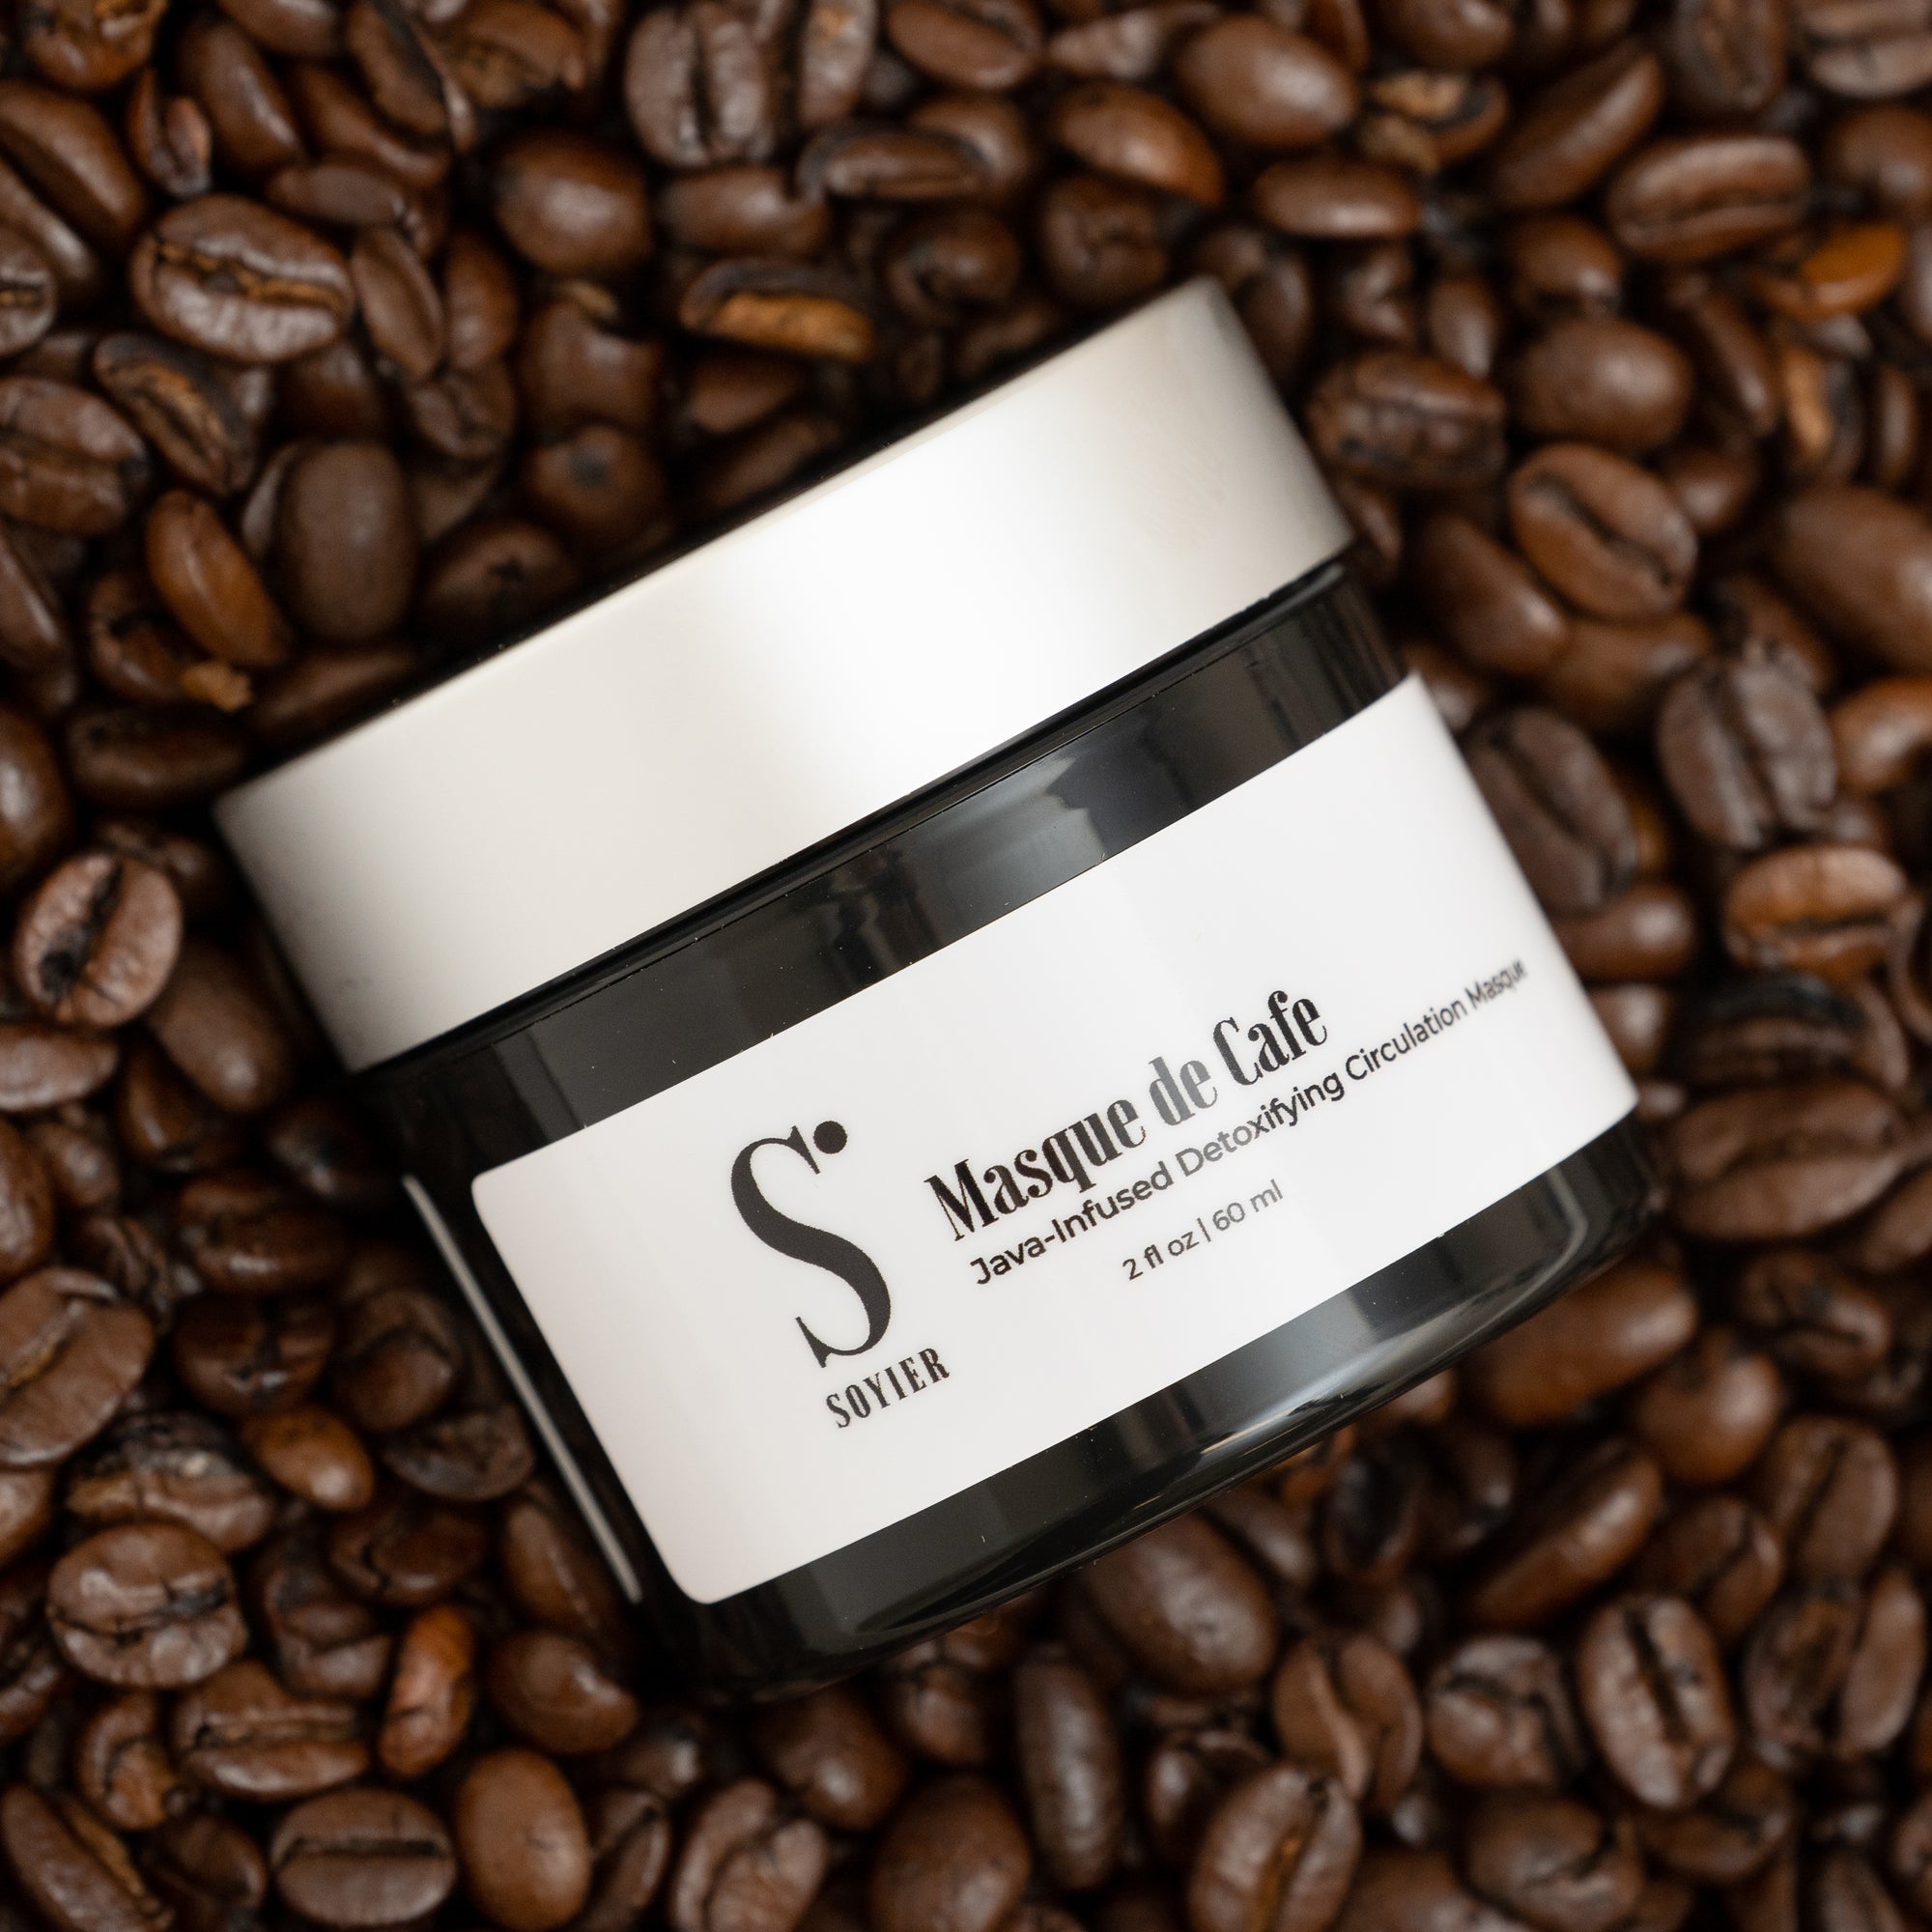 Masque de Café: Java-Infused Detoxifying Circulation Masque